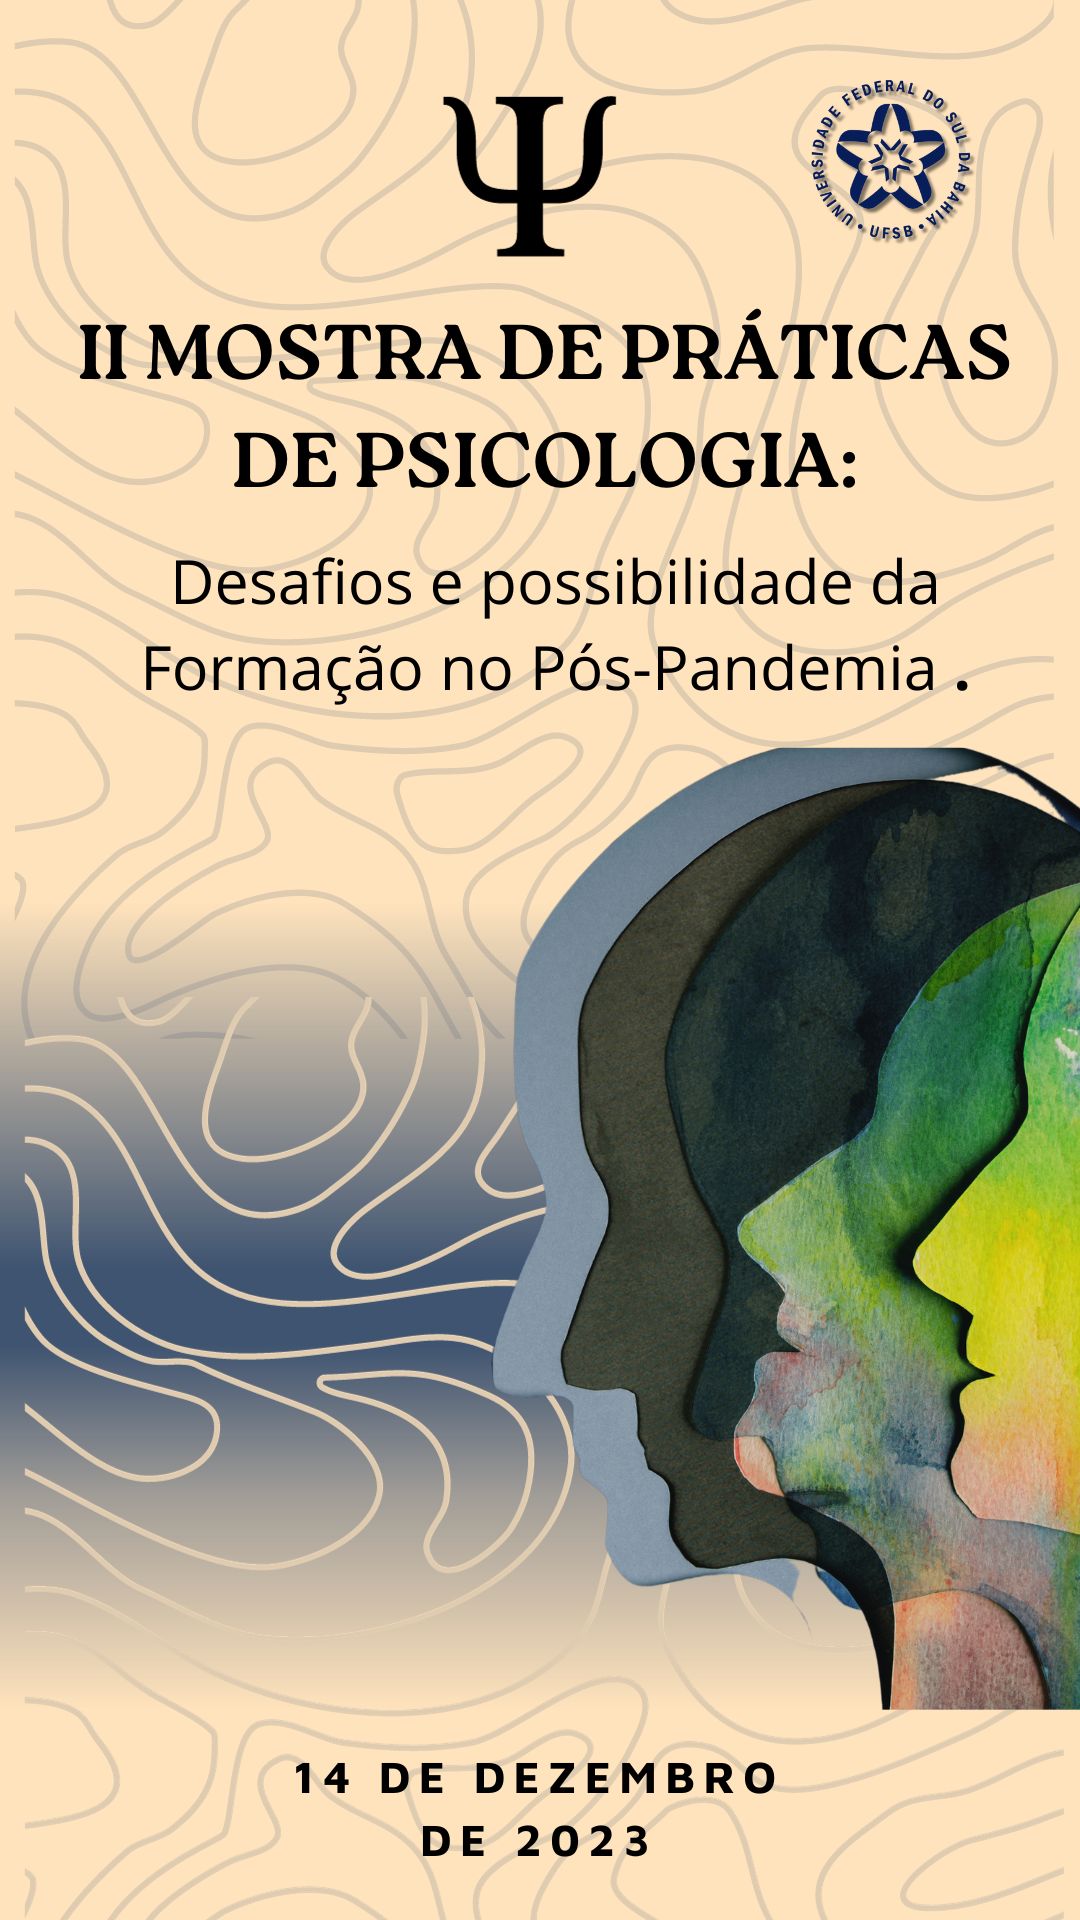 II MOSTRA DE PRÁTICAS DE PSICOLOGIA: DESAFIOS E POSSIBILIDADES DA FORMAÇÃO NO PÓS-PANDEMIA